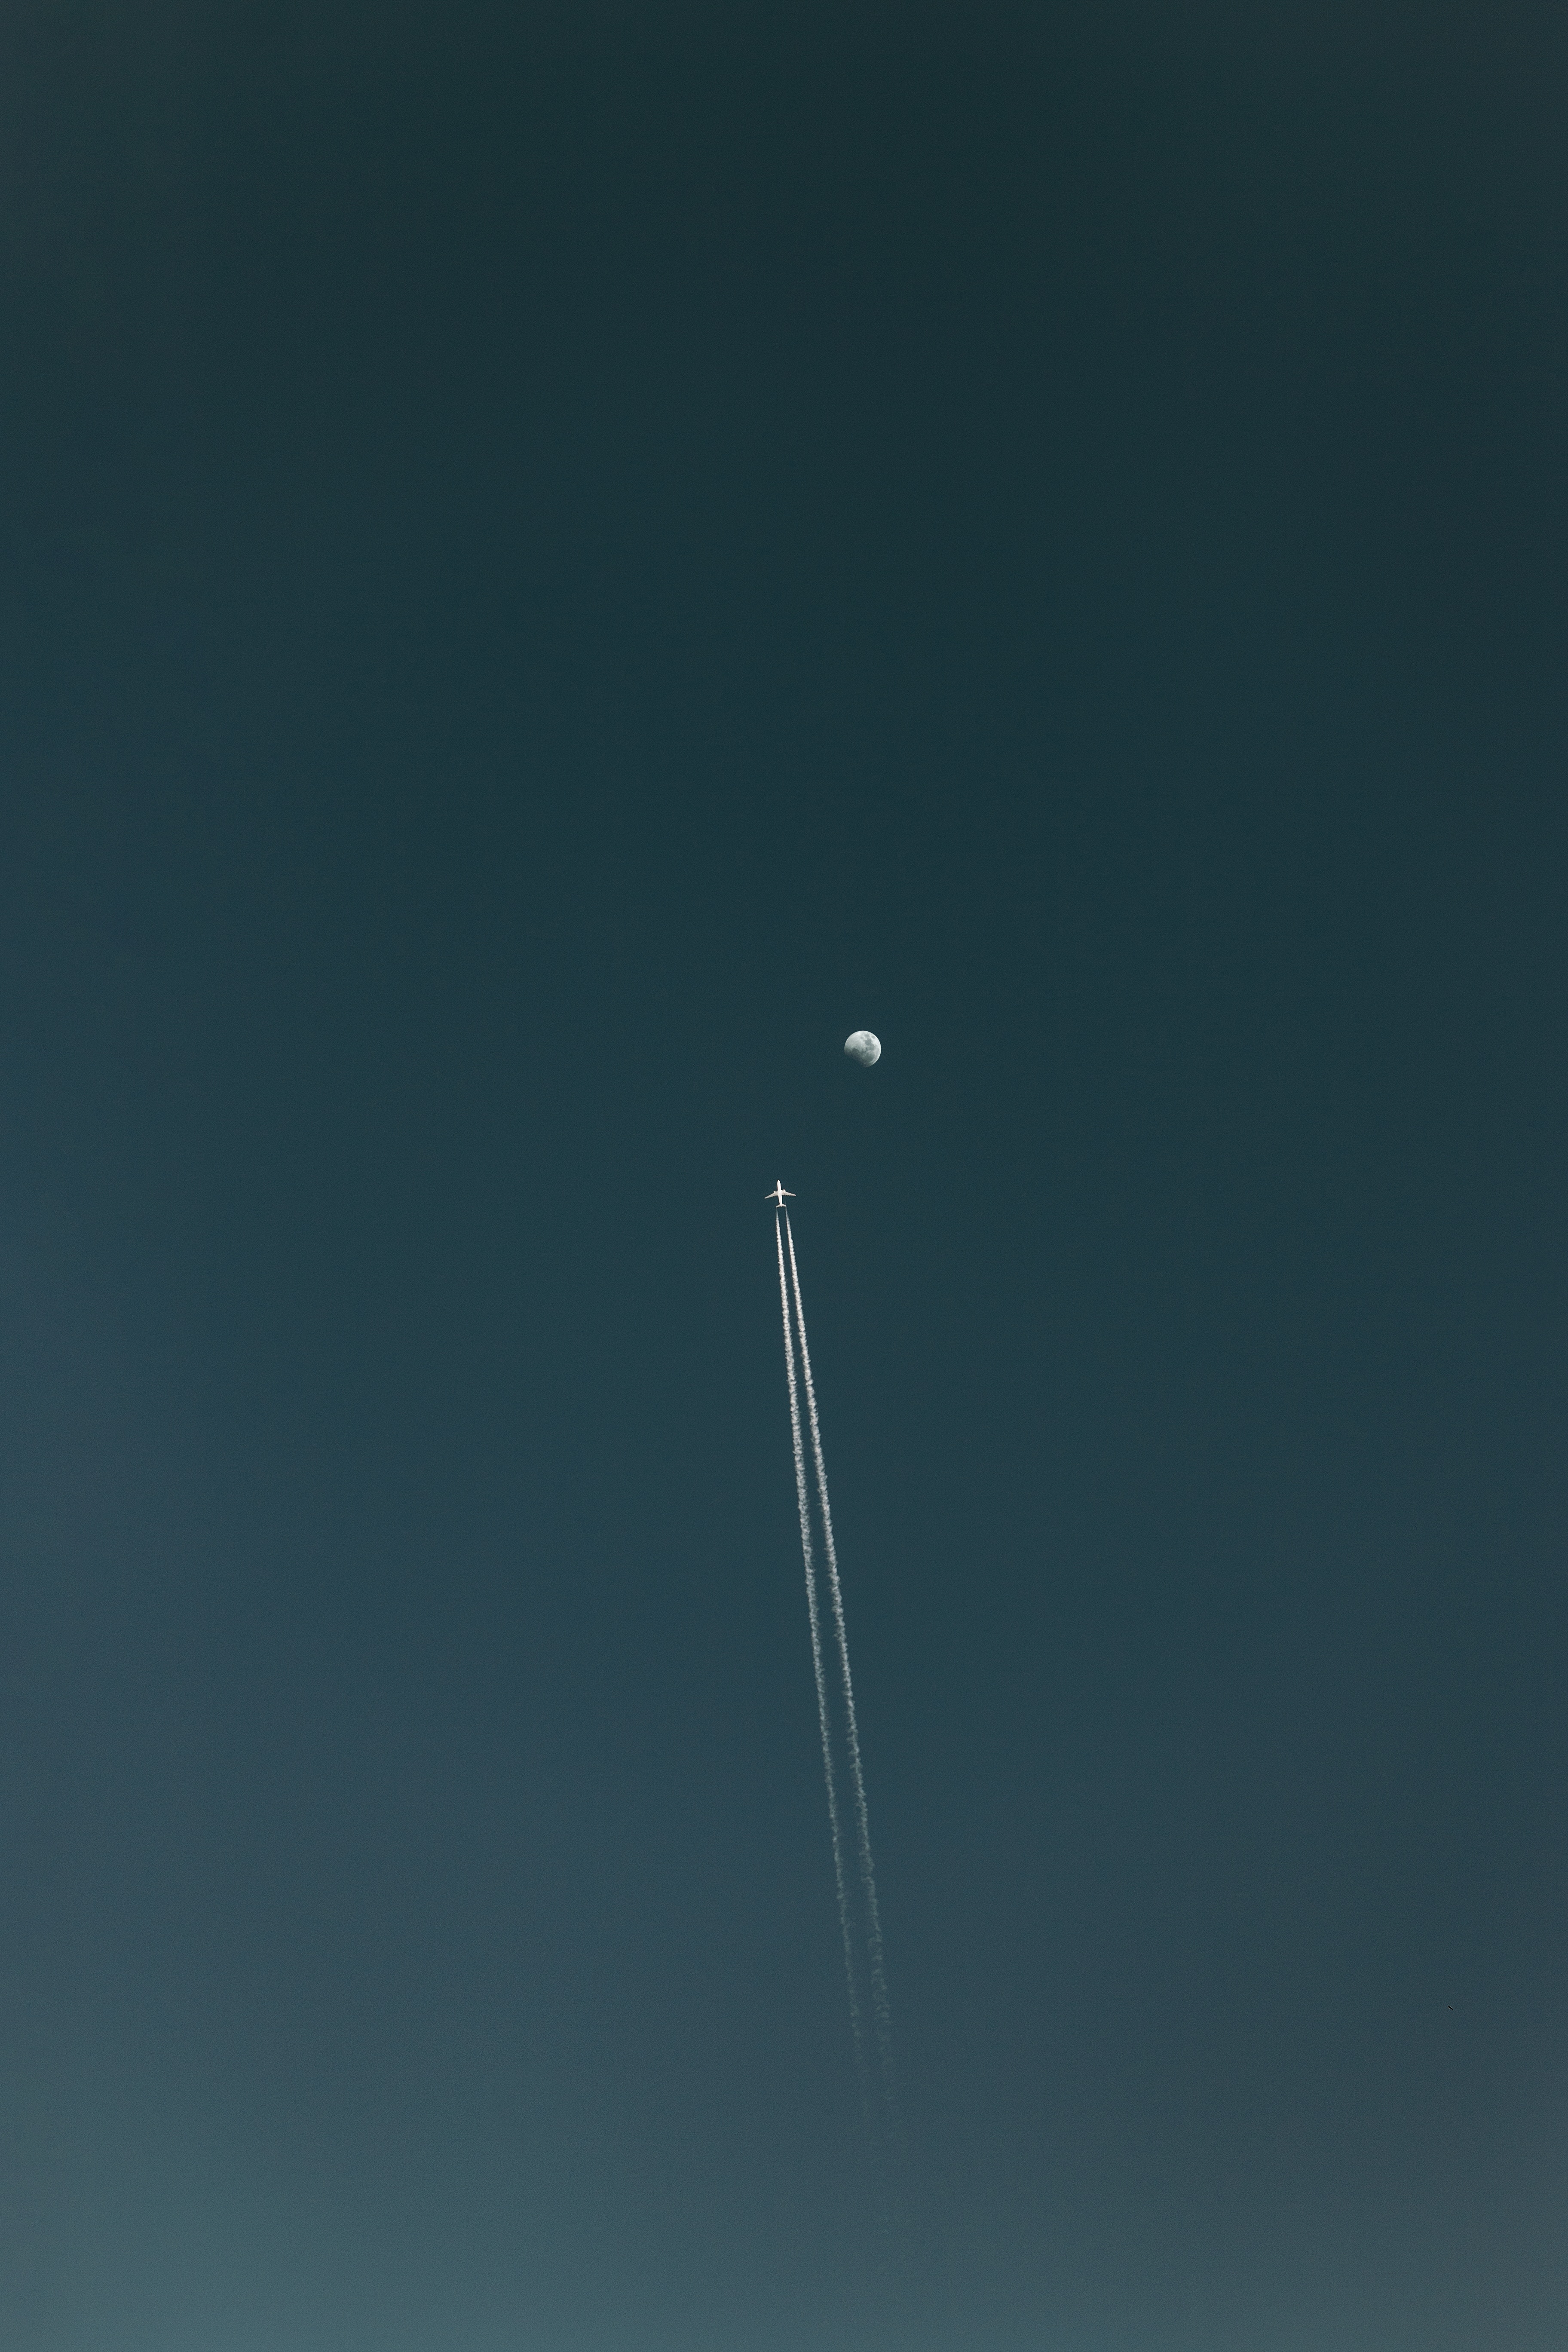 134098 免費下載壁紙 天空, 飞机, 月球, 极简主义, 航班, 飞行, 追踪, 足迹 屏保和圖片